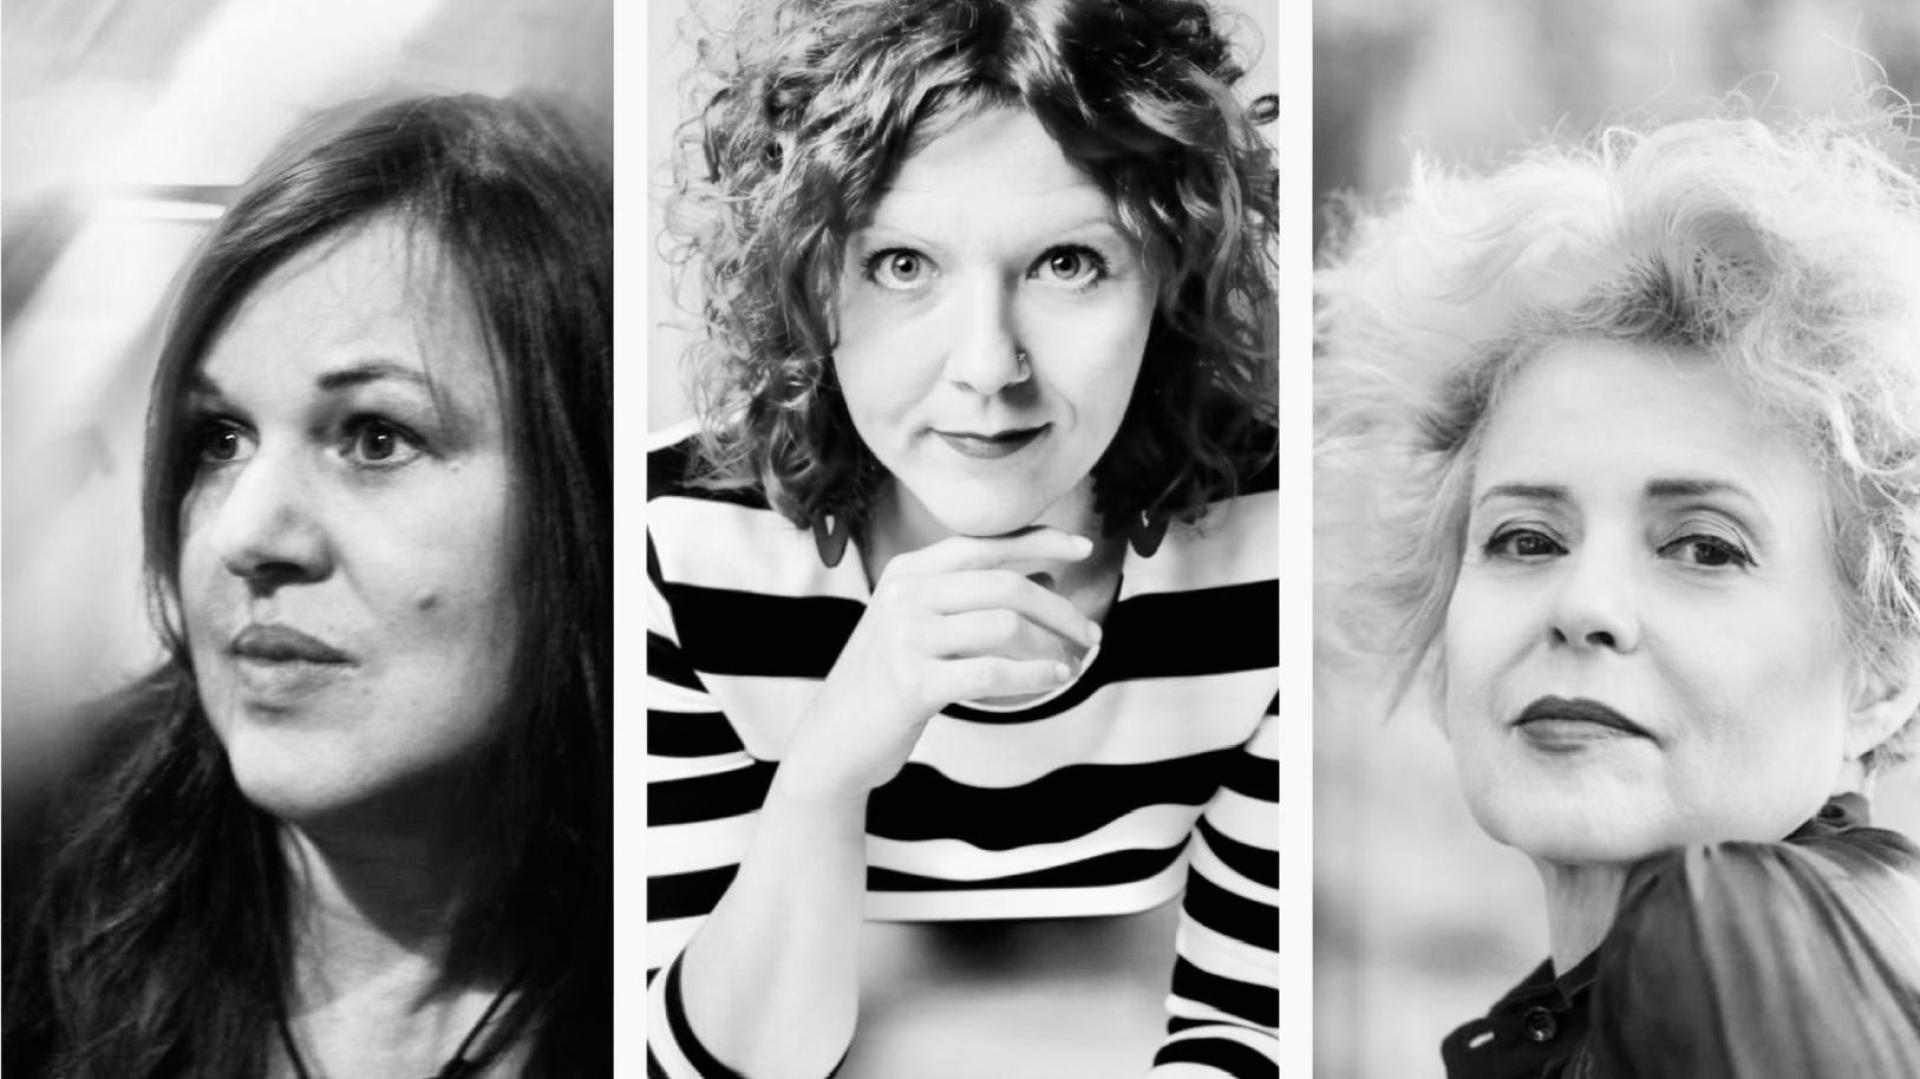 Drei Frauen in Schwarz-Weiß-Fotos, die verschiedene Emotionen Ausdrücken